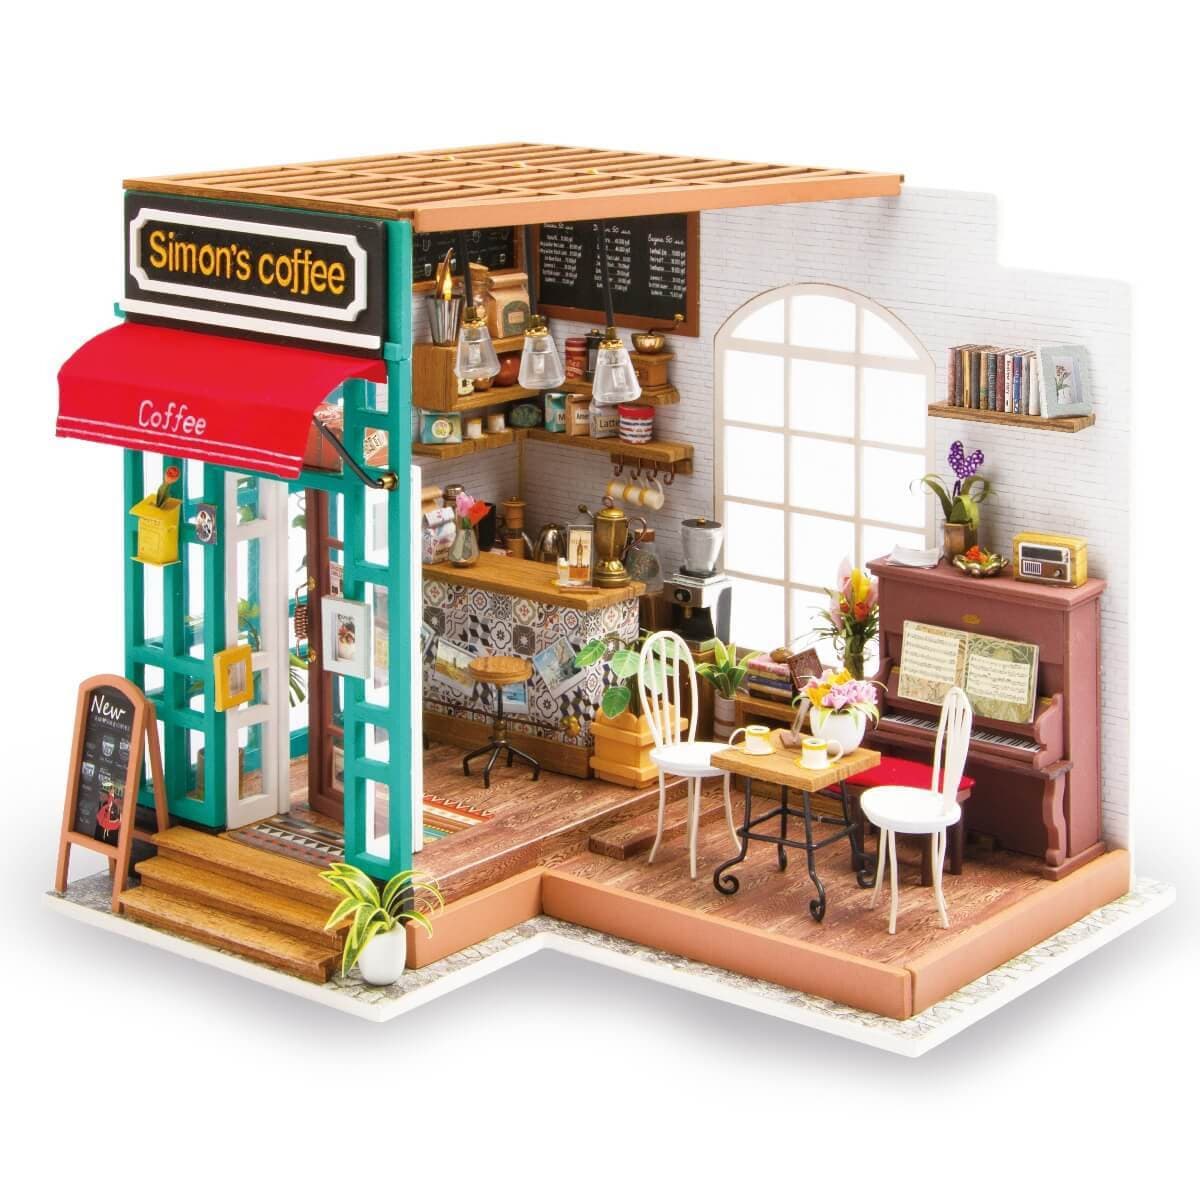 Smart Book Nook DIY Maison de poupée Miniature Kit de maison avec